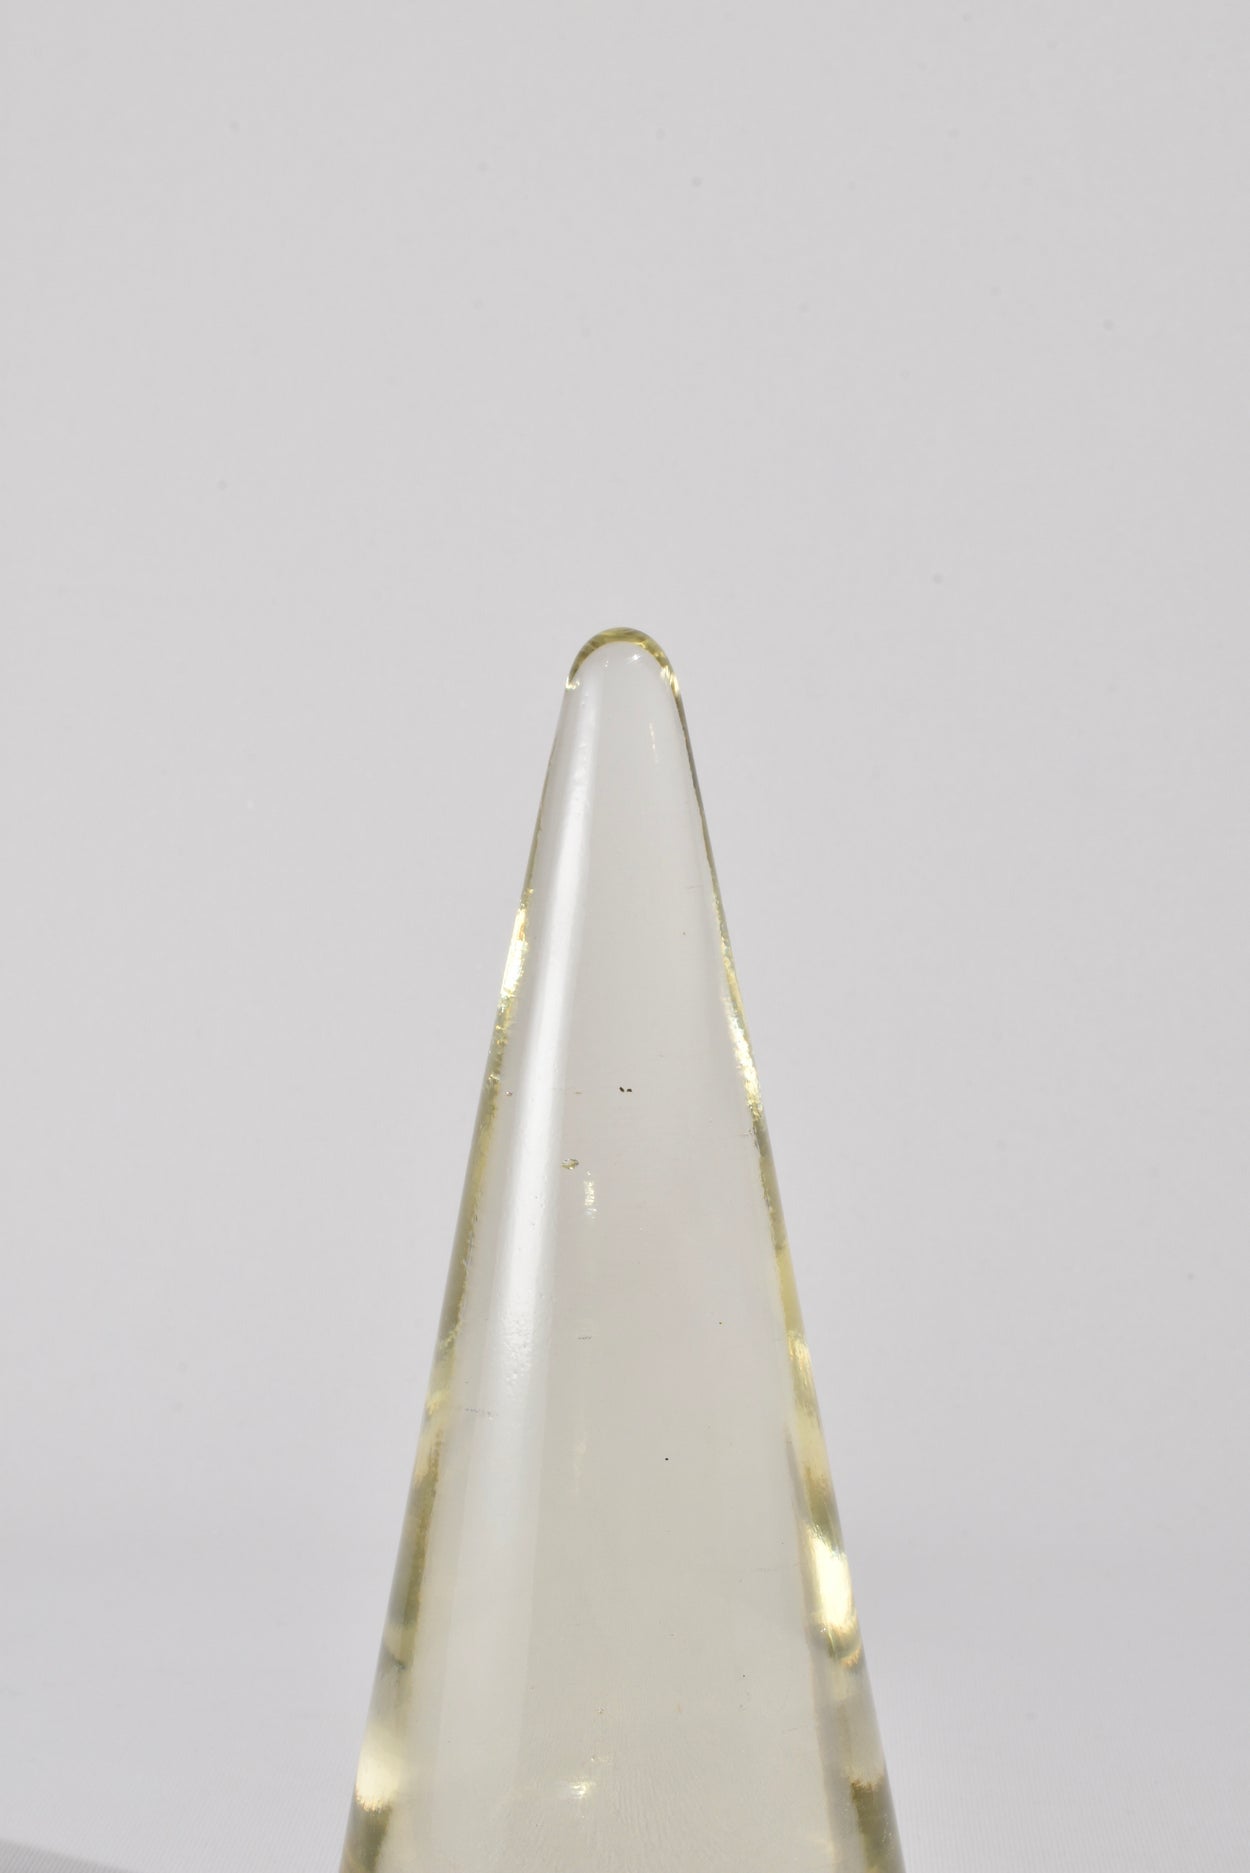 Glass Cone Sculpture